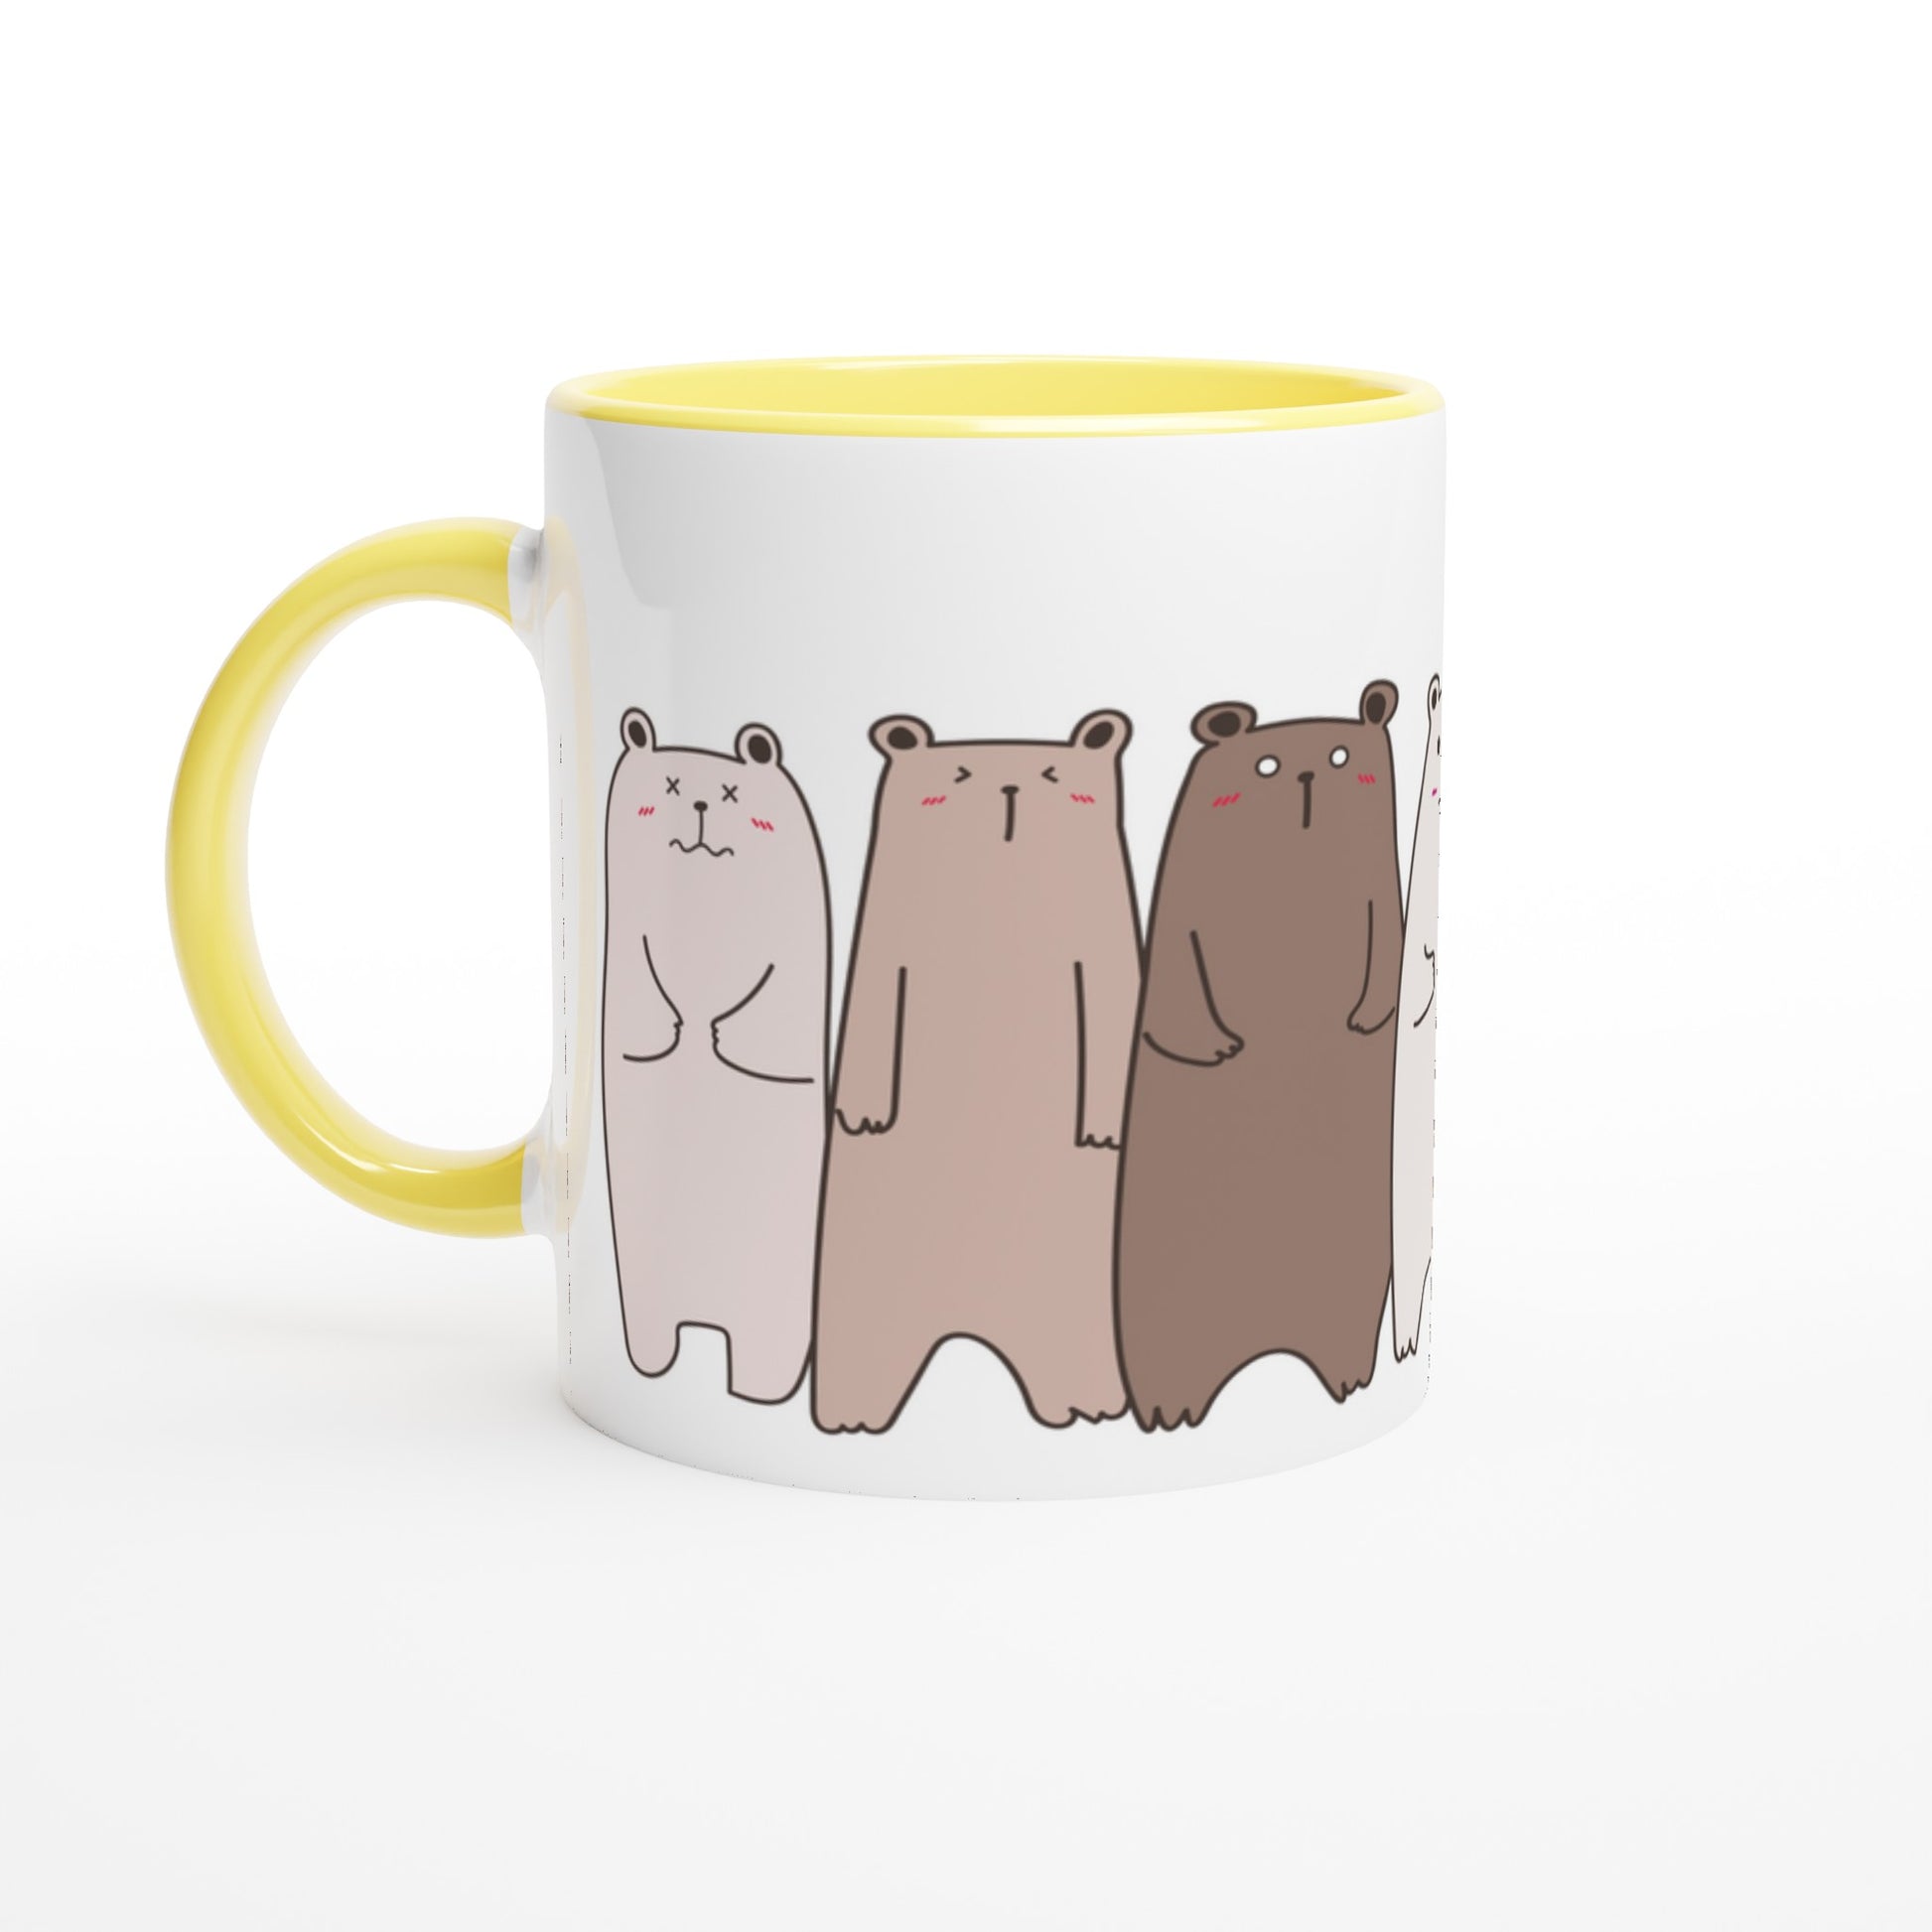 Bears In A Row - White 11oz Ceramic Mug with Colour Inside Ceramic Yellow Colour 11oz Mug animal